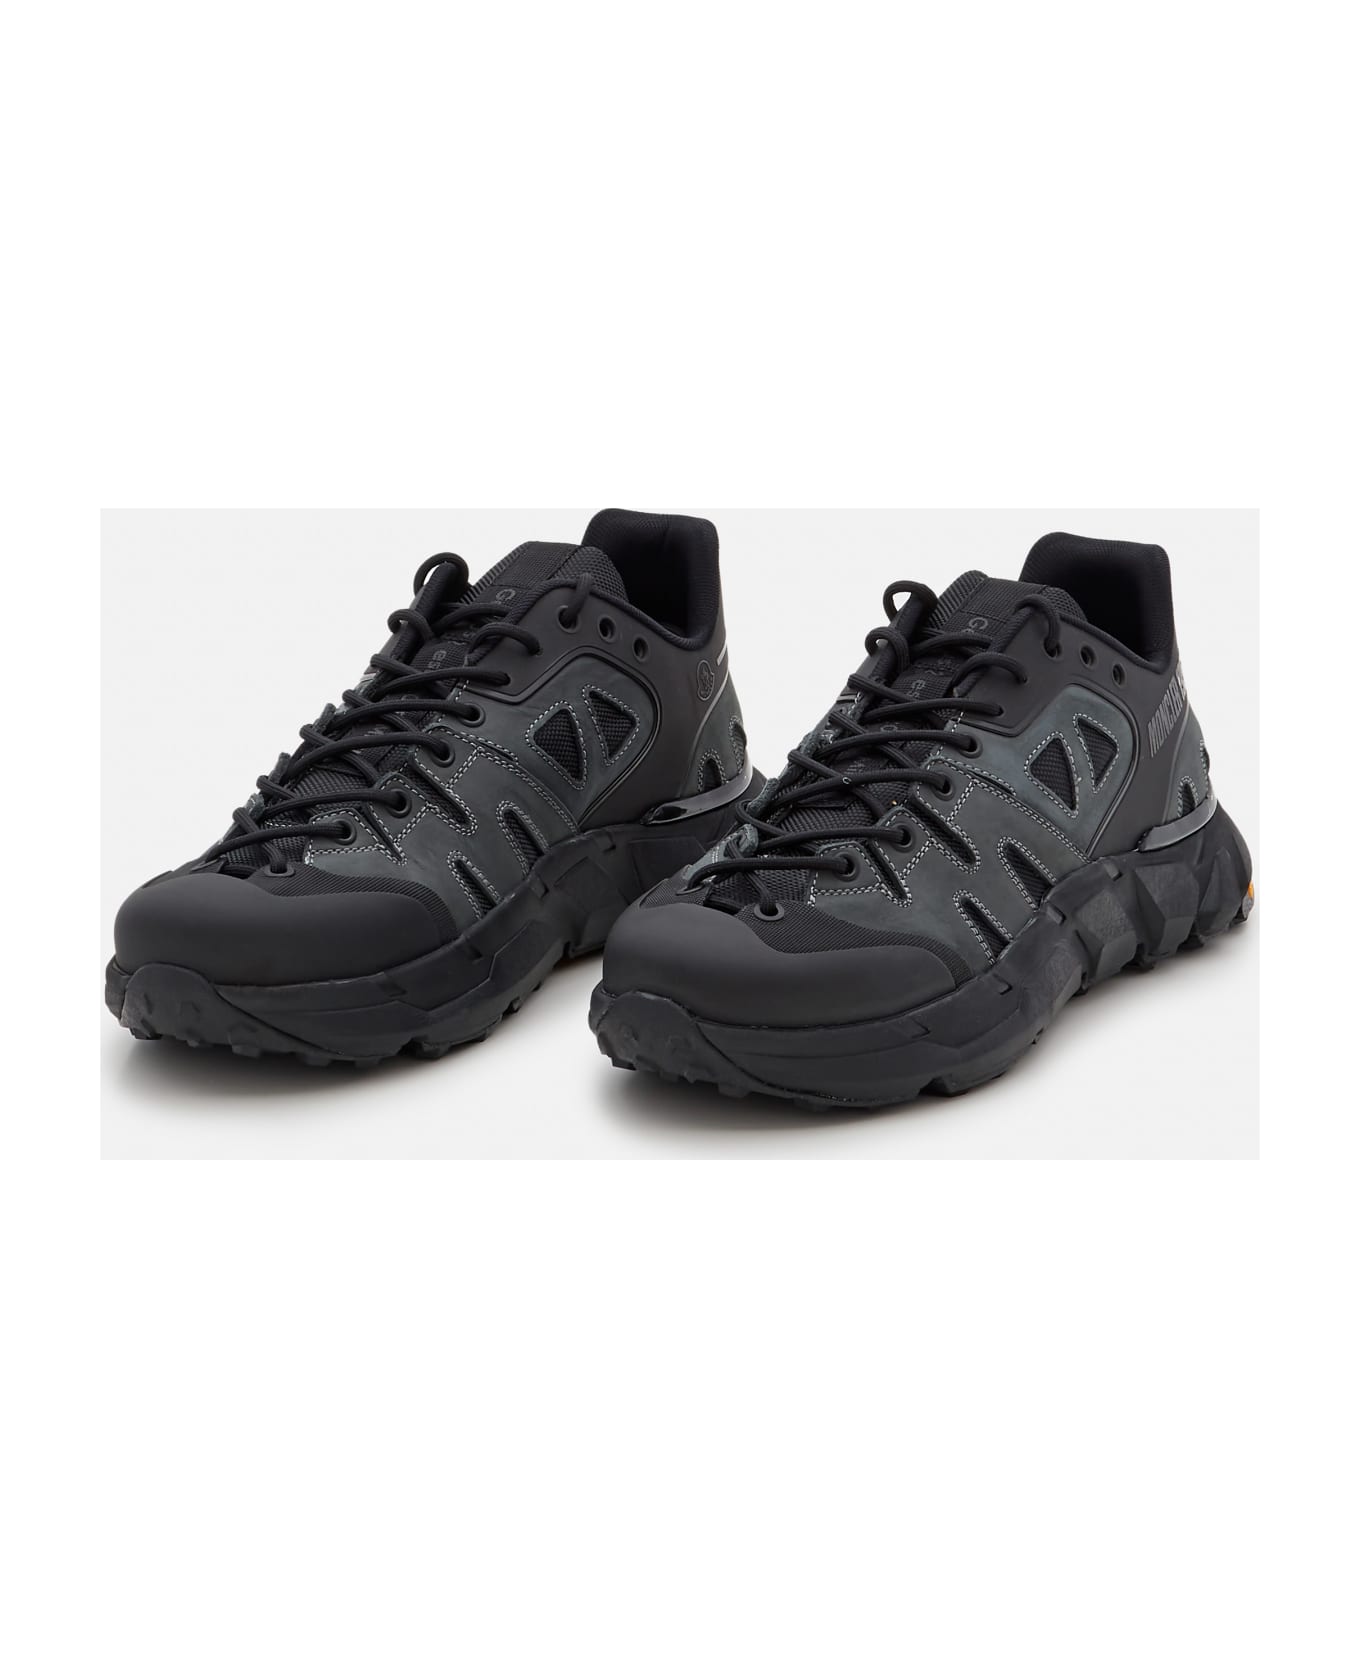 Moncler Genius "silencio" Low-top Sneakers - Black